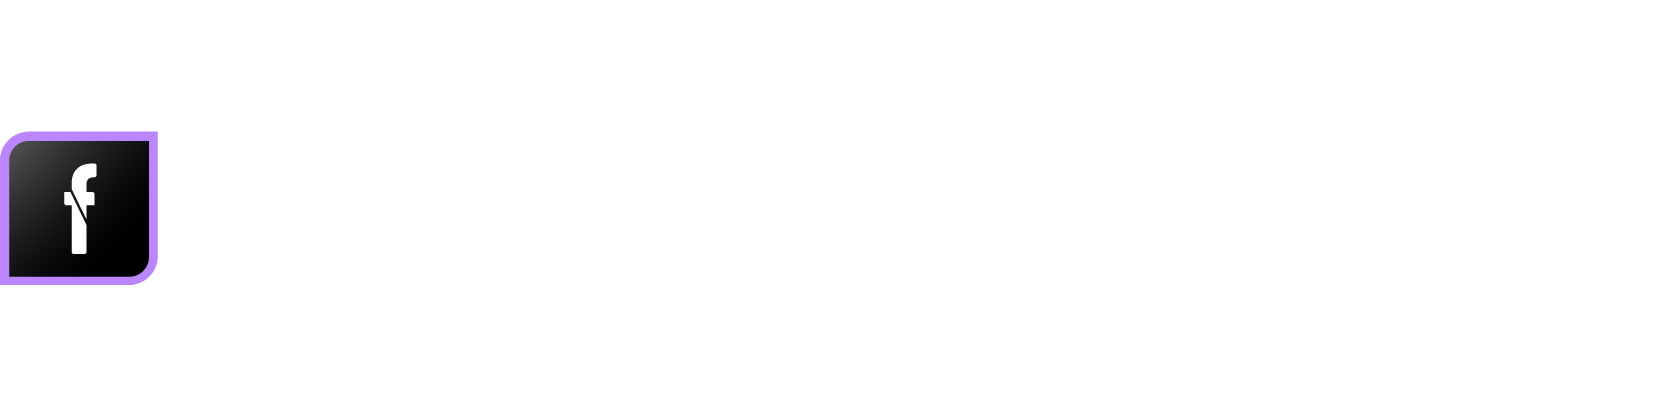 logo NODE-flow